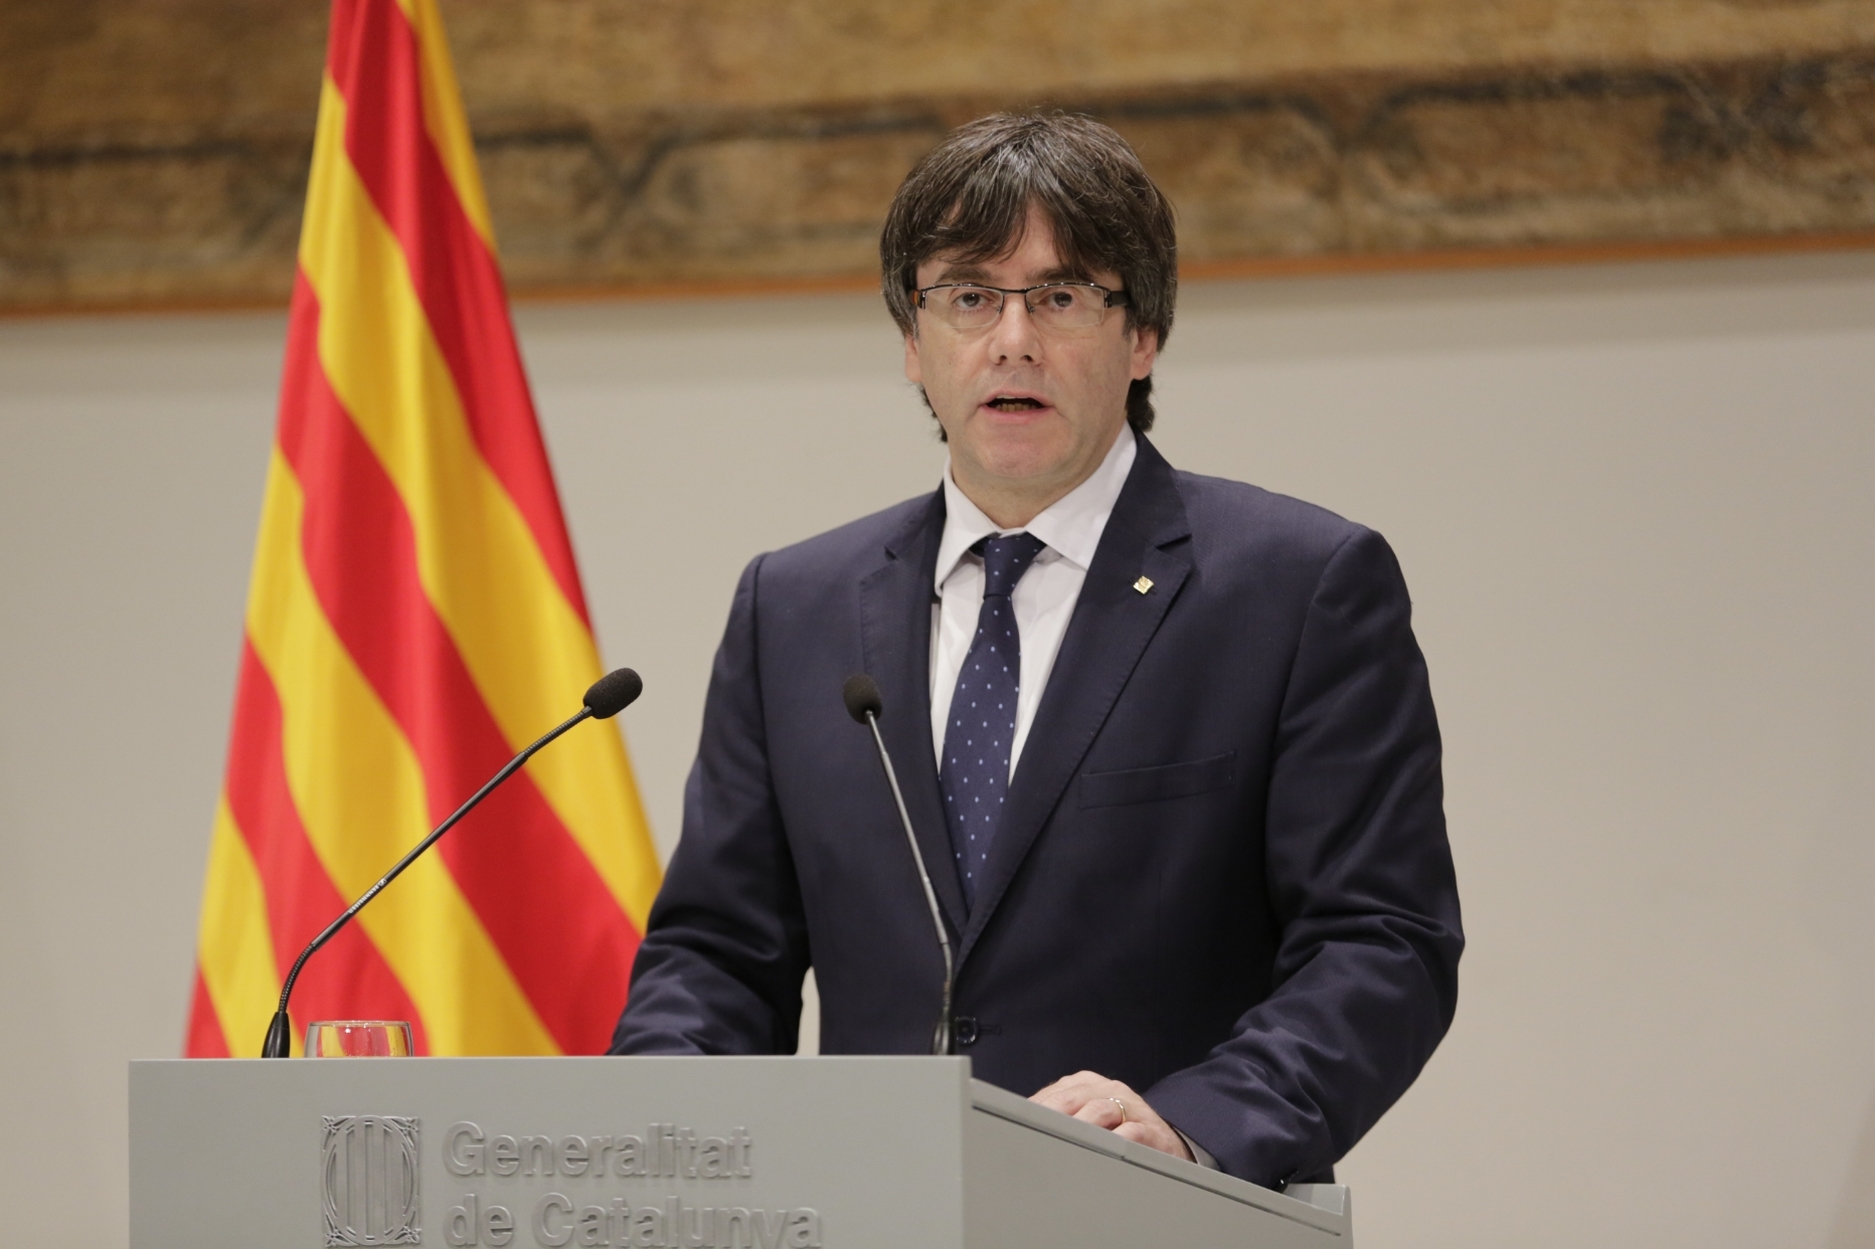 ΕΚΤΑΚΤΟ: Συνελήφθη στην Γερμανία ο παυθείς Πρόεδρος της Καταλονίας Κ. Πουτζδεμόν